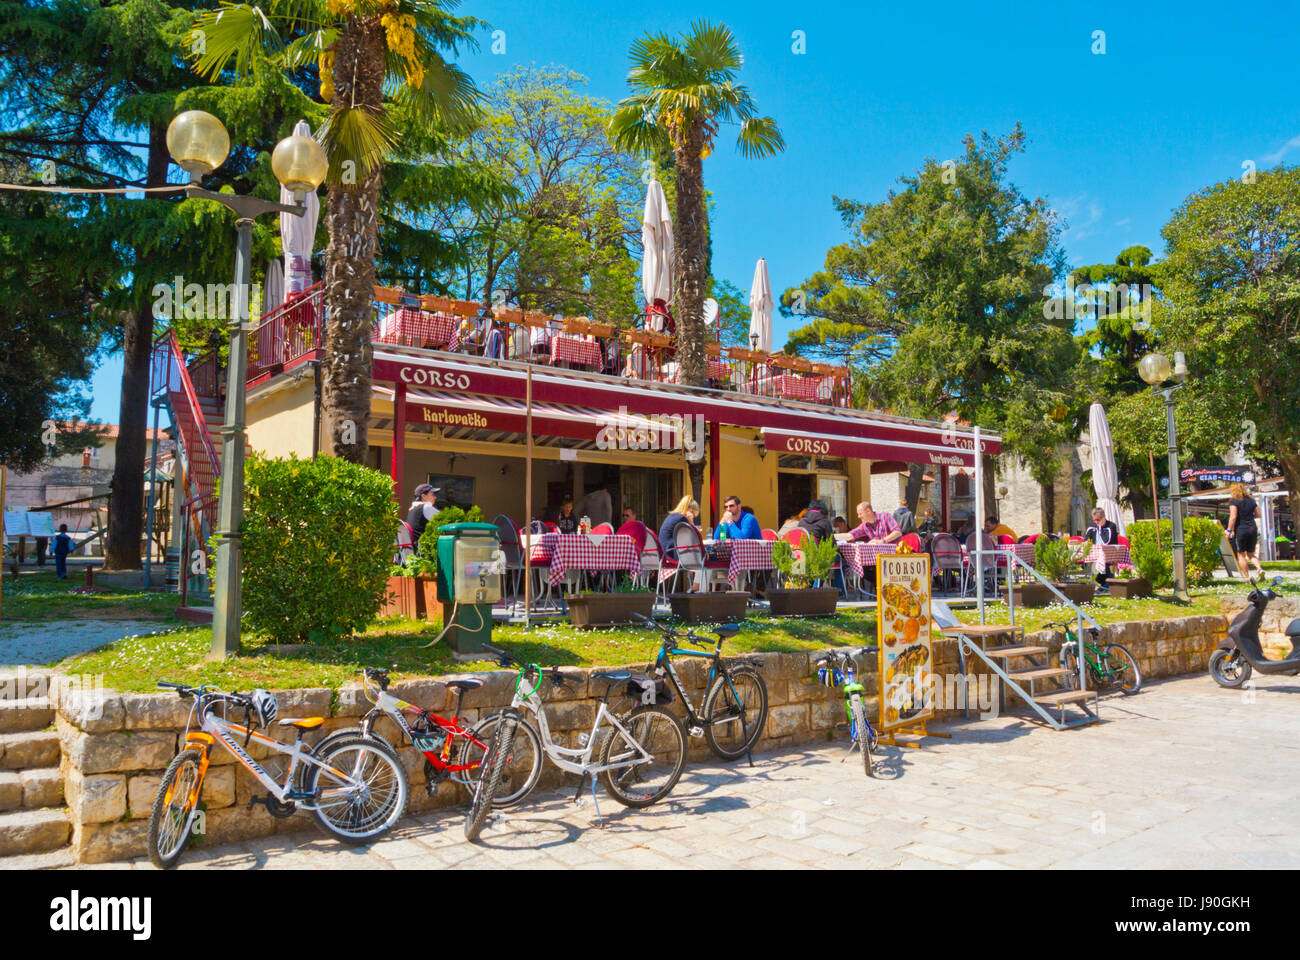 Restaurant Coprso, Trg Marafor, altes Forum, Altstadt, Porec, Istrien, Kroatien Stockfoto